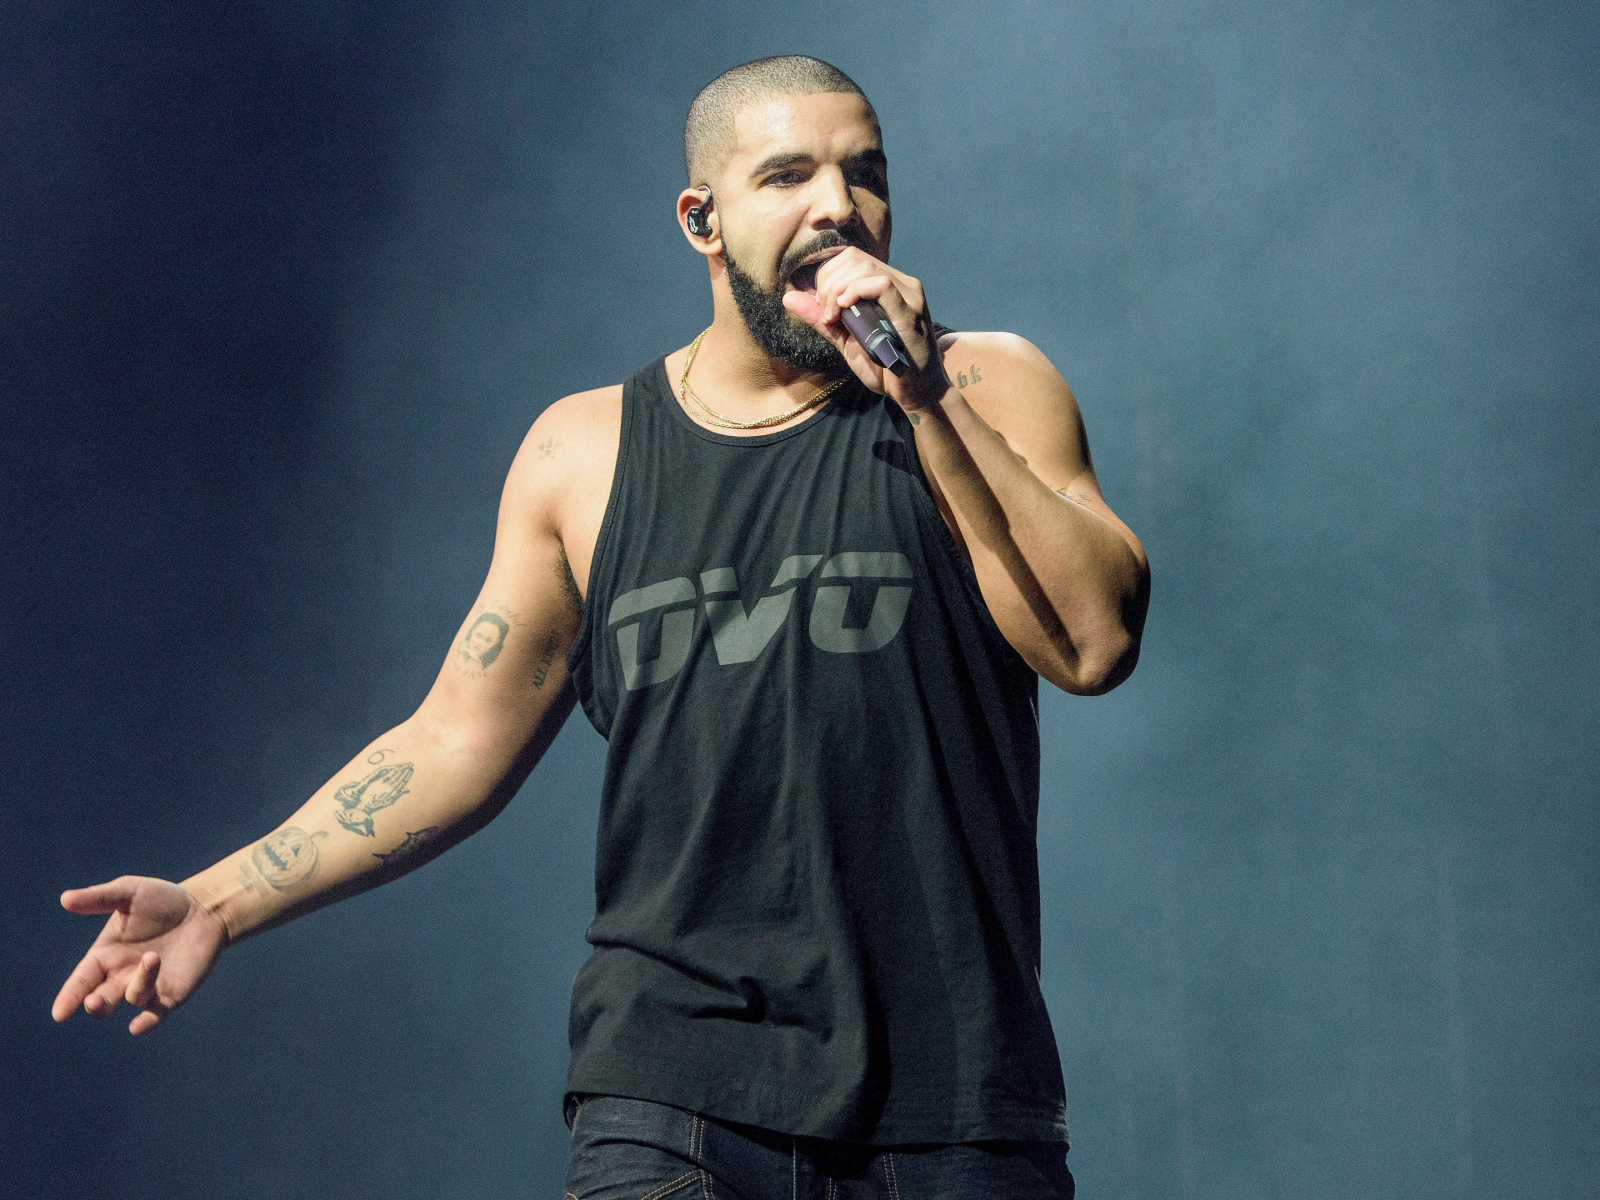 Canadian rapper Drake on speech